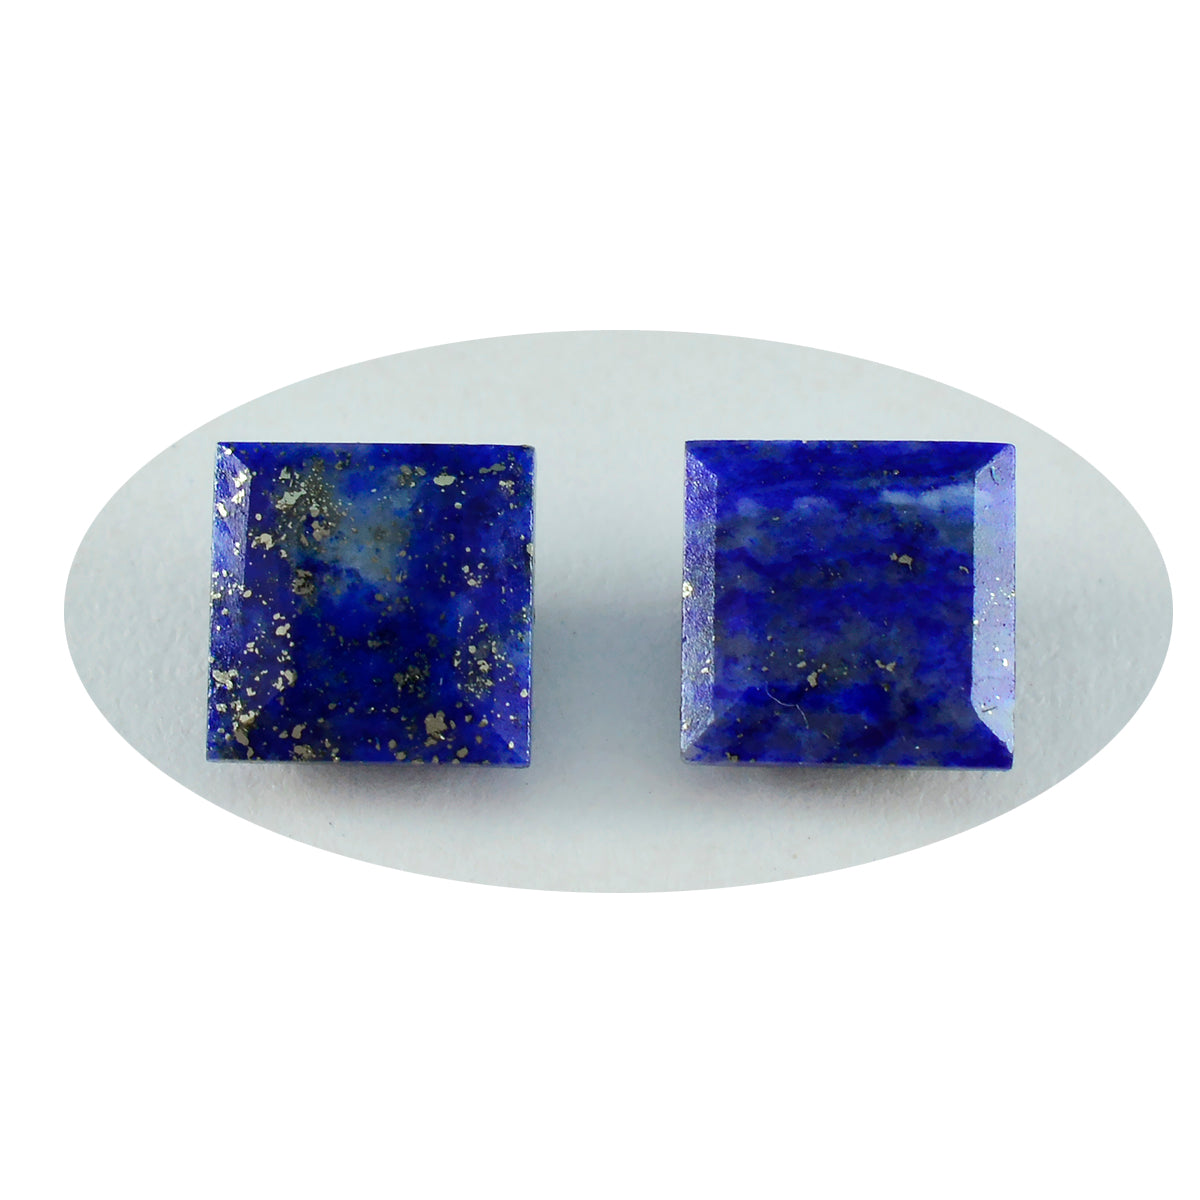 Riyogems 1 Stück natürlicher blauer Lapislazuli, facettiert, 11 x 11 mm, quadratische Form, hübsche, hochwertige lose Edelsteine